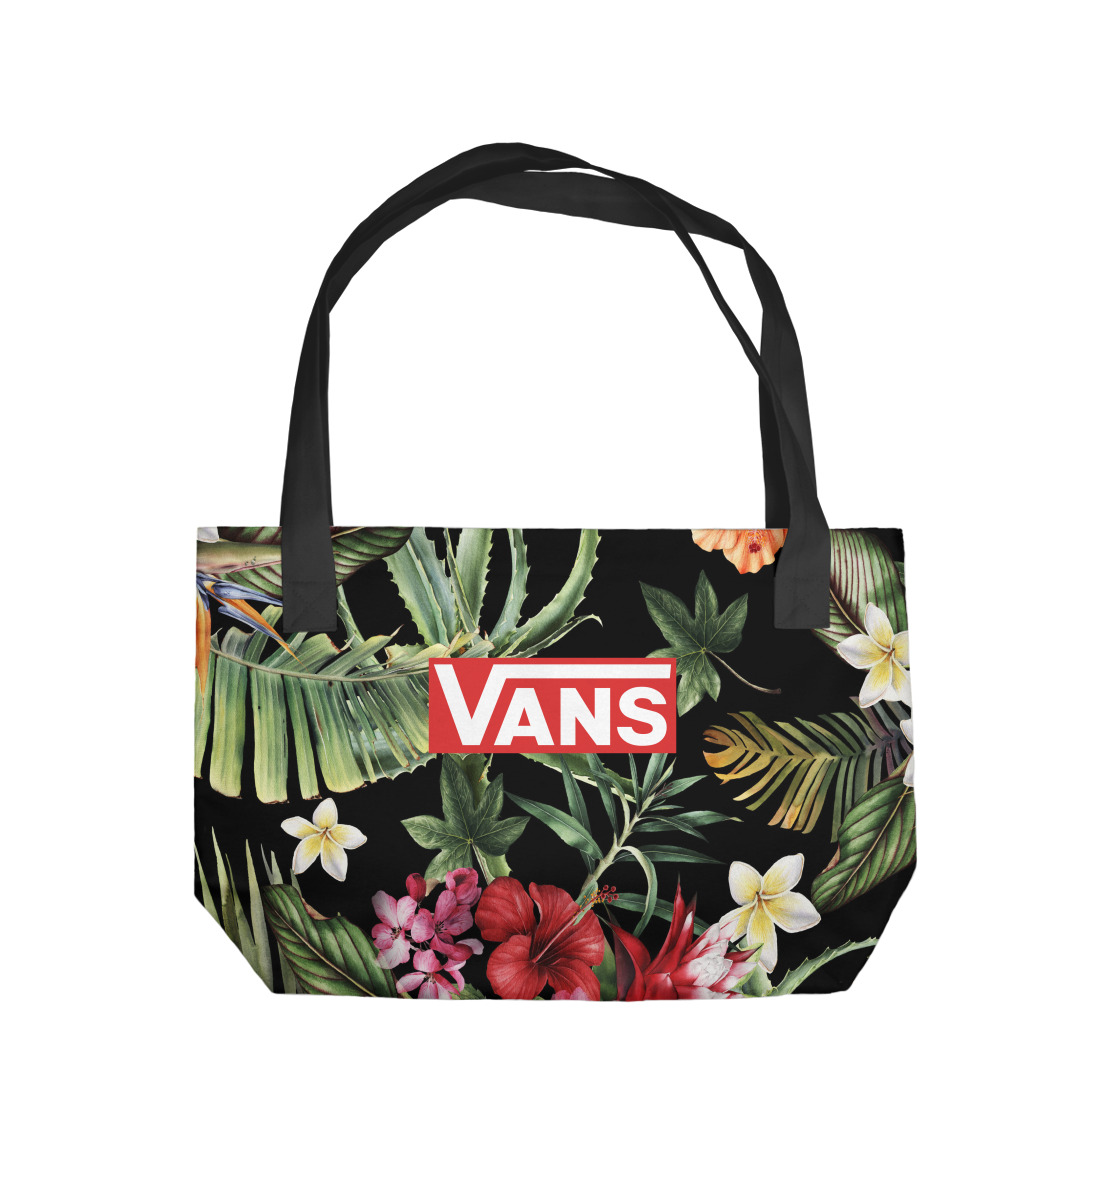 Купить Пляжная сумка VANS Tropical, артикул VAN-541765-supmp